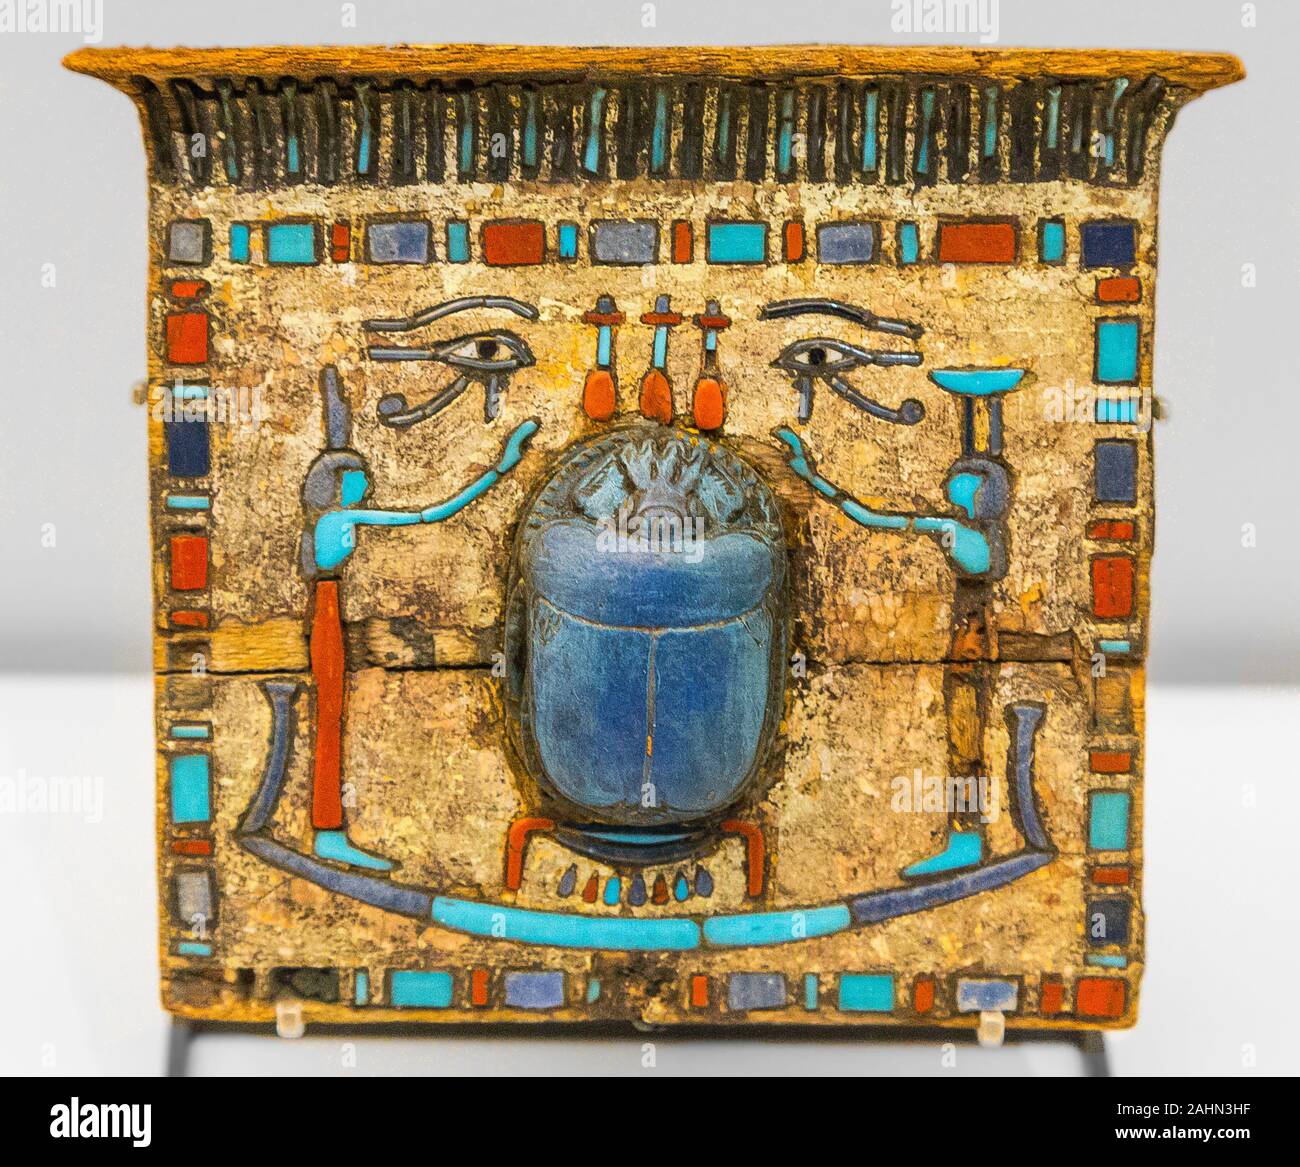 Ausstellung "Das Reich der Tiere im Alten Ägypten", im Jahr 2015 durch das Louvre Museum organisiert. Pektorale, Neues Reich, Holz und Fayence, AF2560. Stockfoto